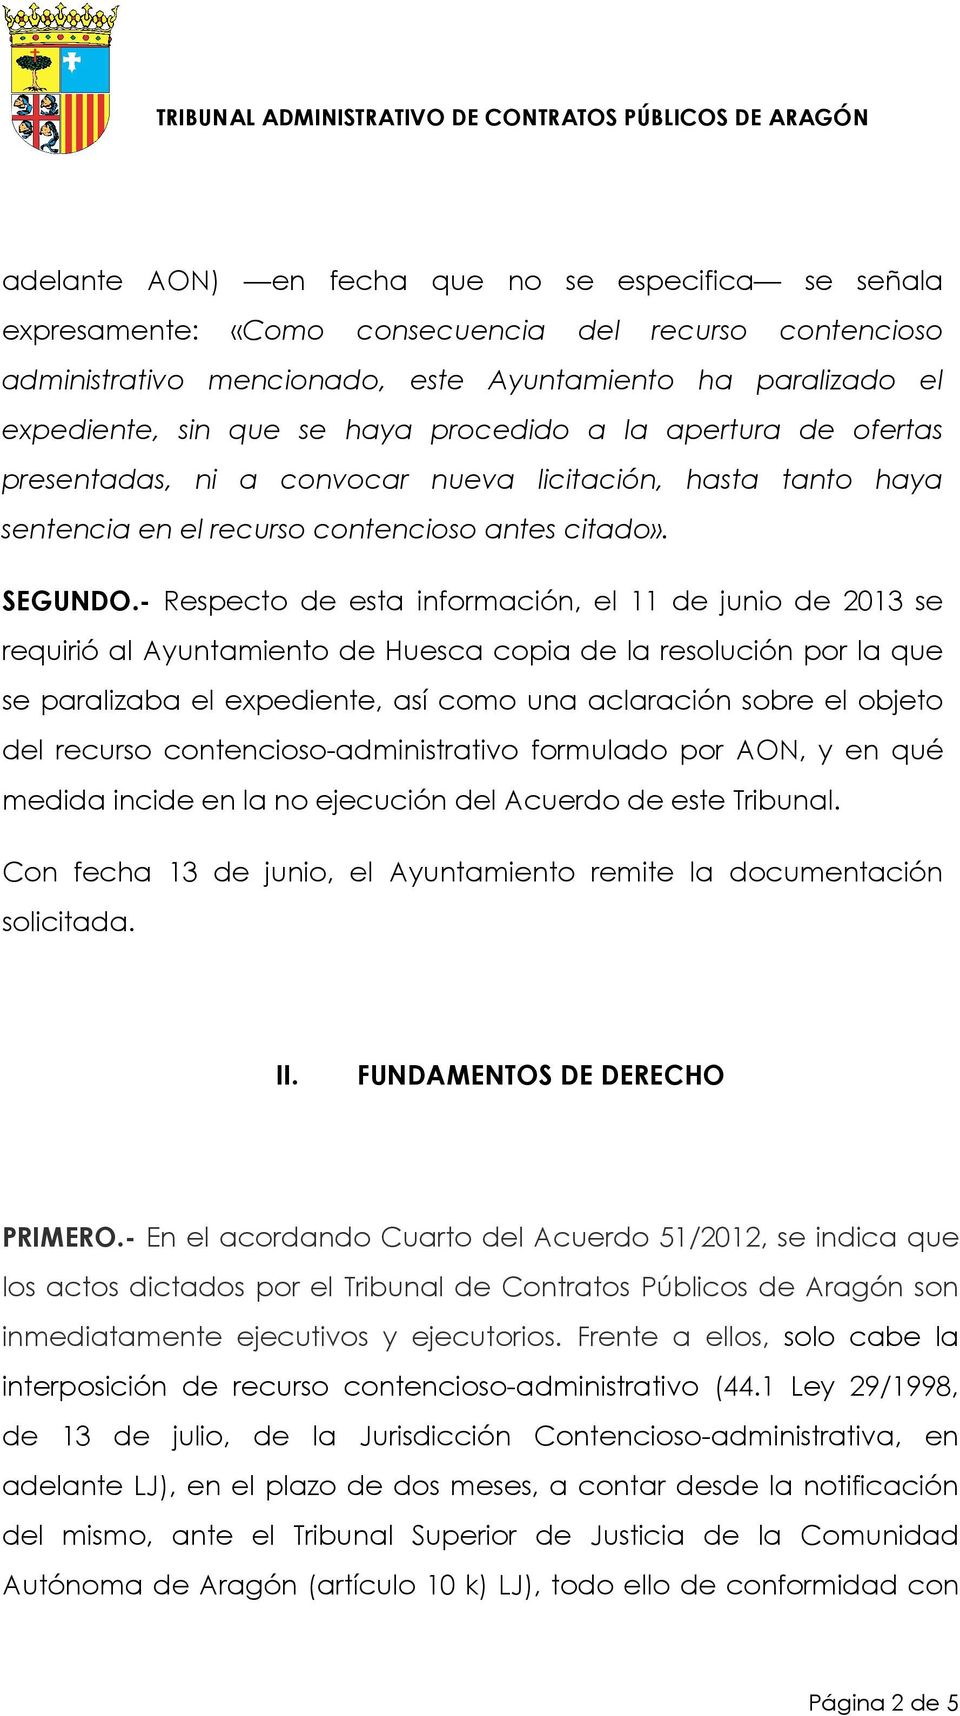 - Respecto de esta información, el 11 de junio de 2013 se requirió al Ayuntamiento de Huesca copia de la resolución por la que se paralizaba el expediente, así como una aclaración sobre el objeto del